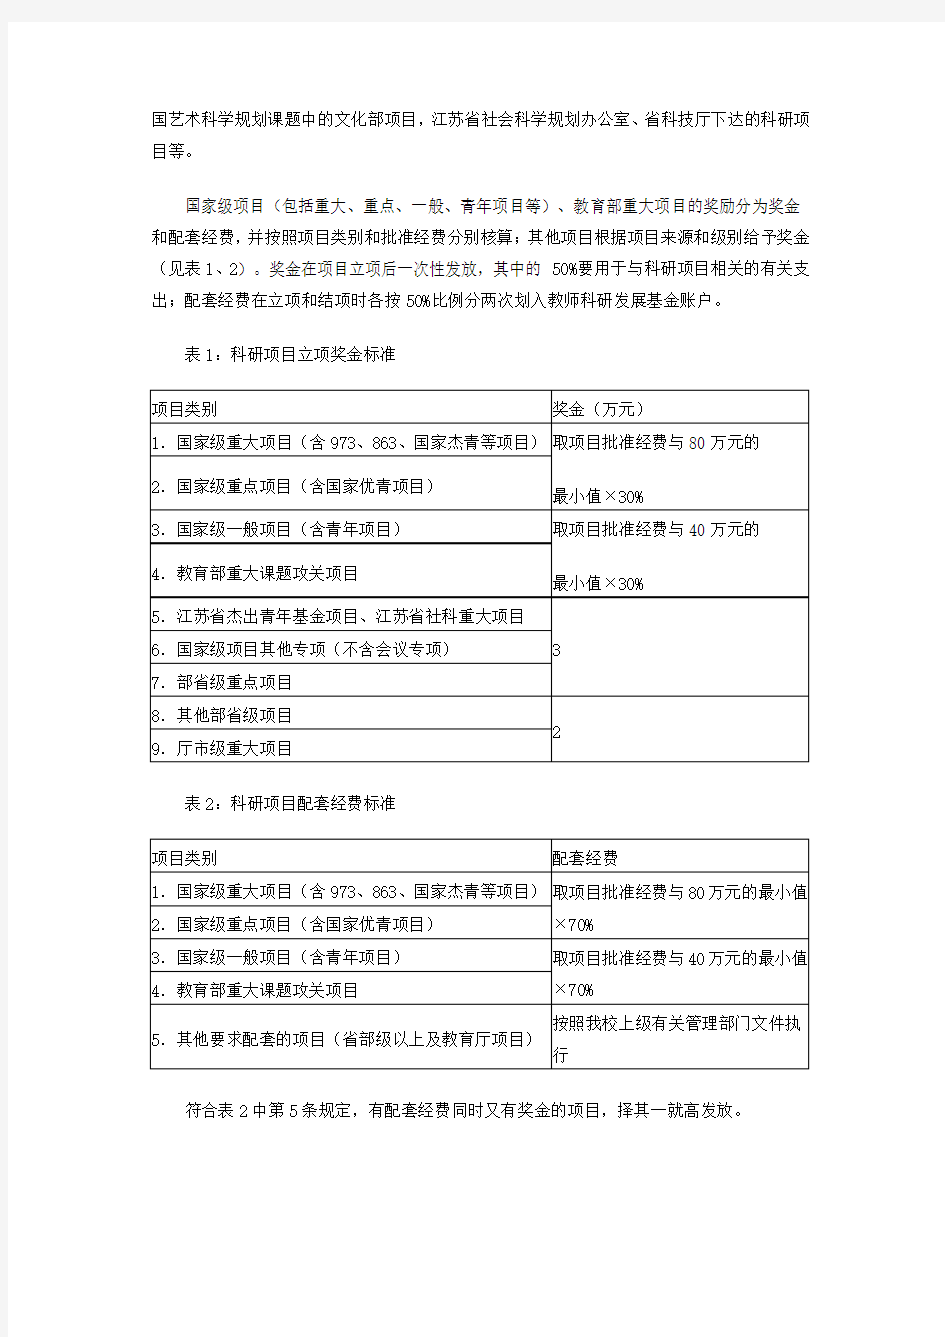 江苏师范大学科研奖励办法(苏师大科〔2014〕1号)